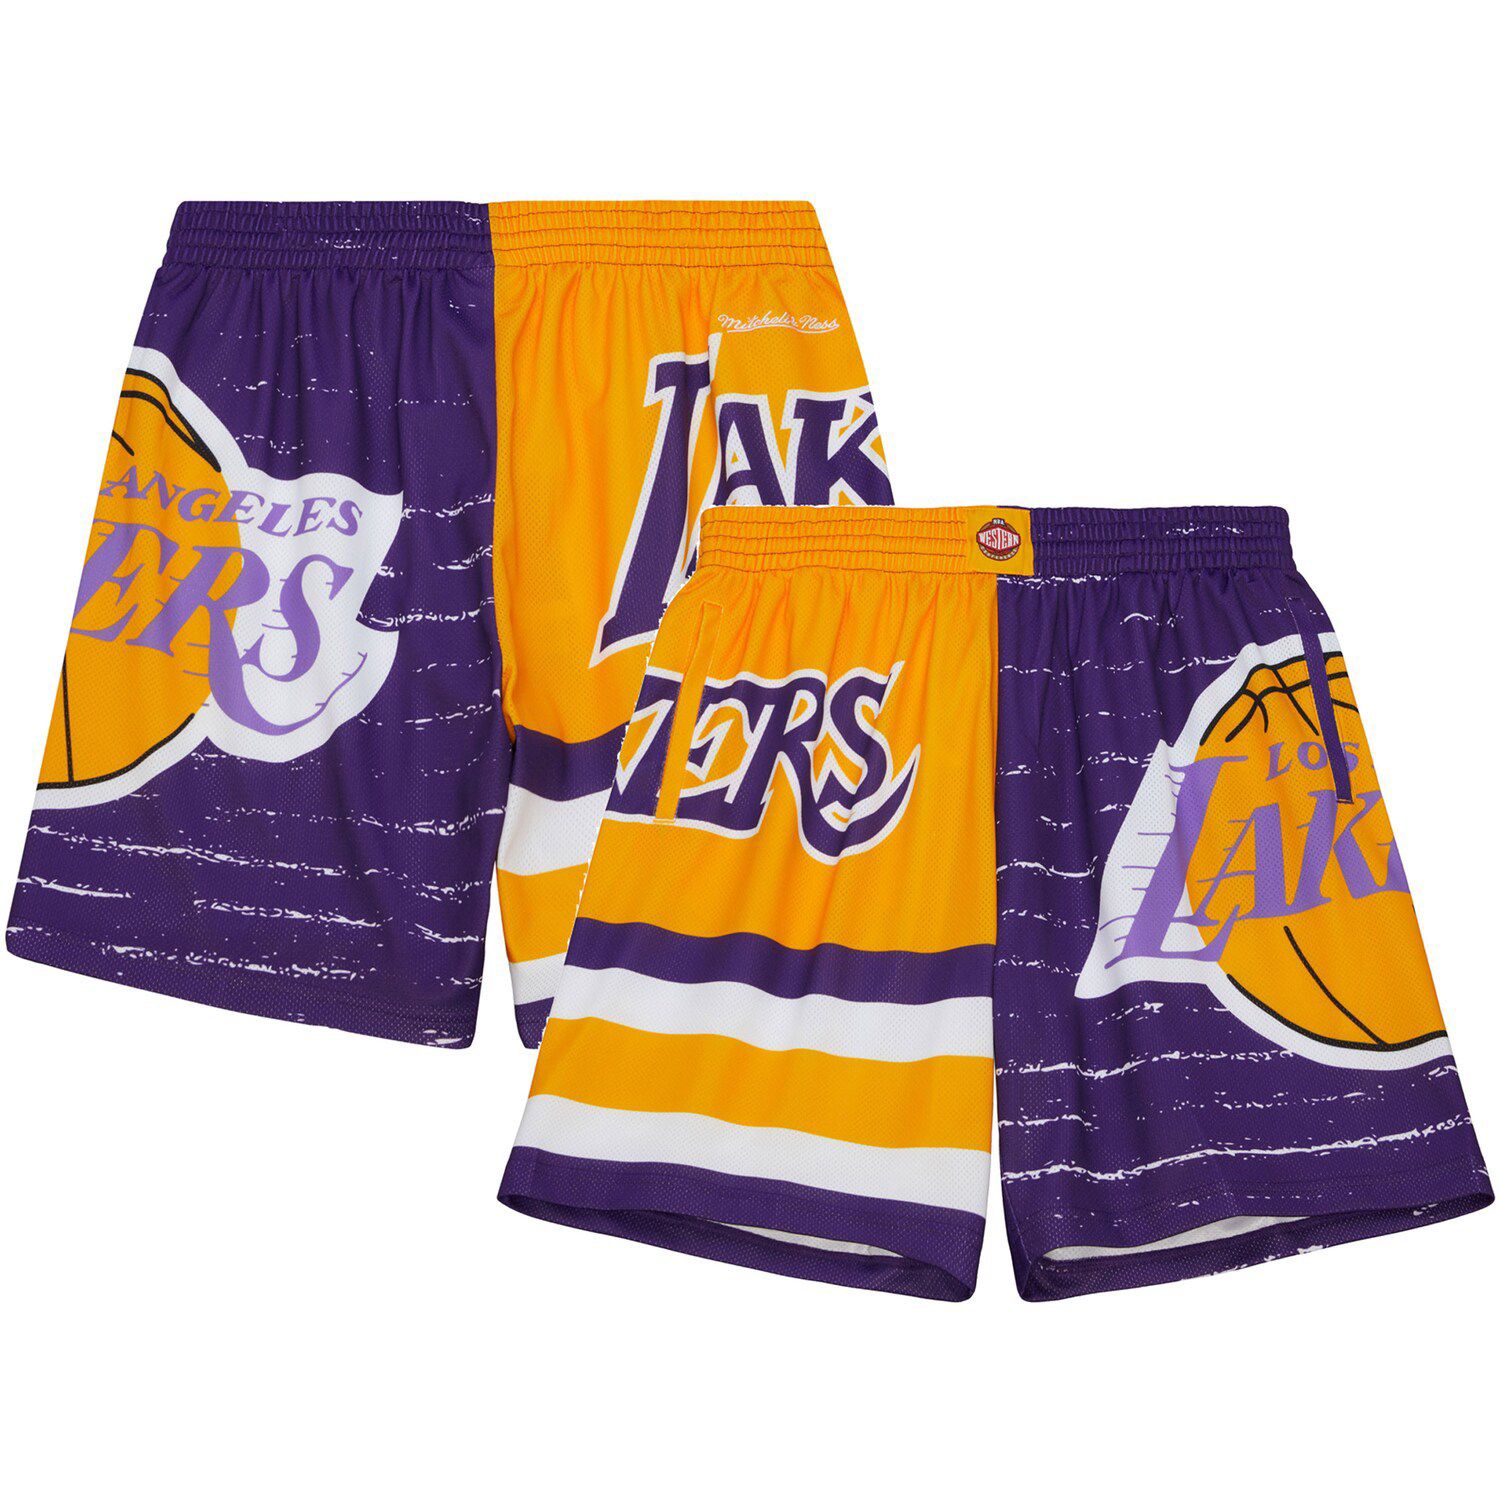 Mitchell & Ness Purple Utah Jazz Jump Shot Shorts